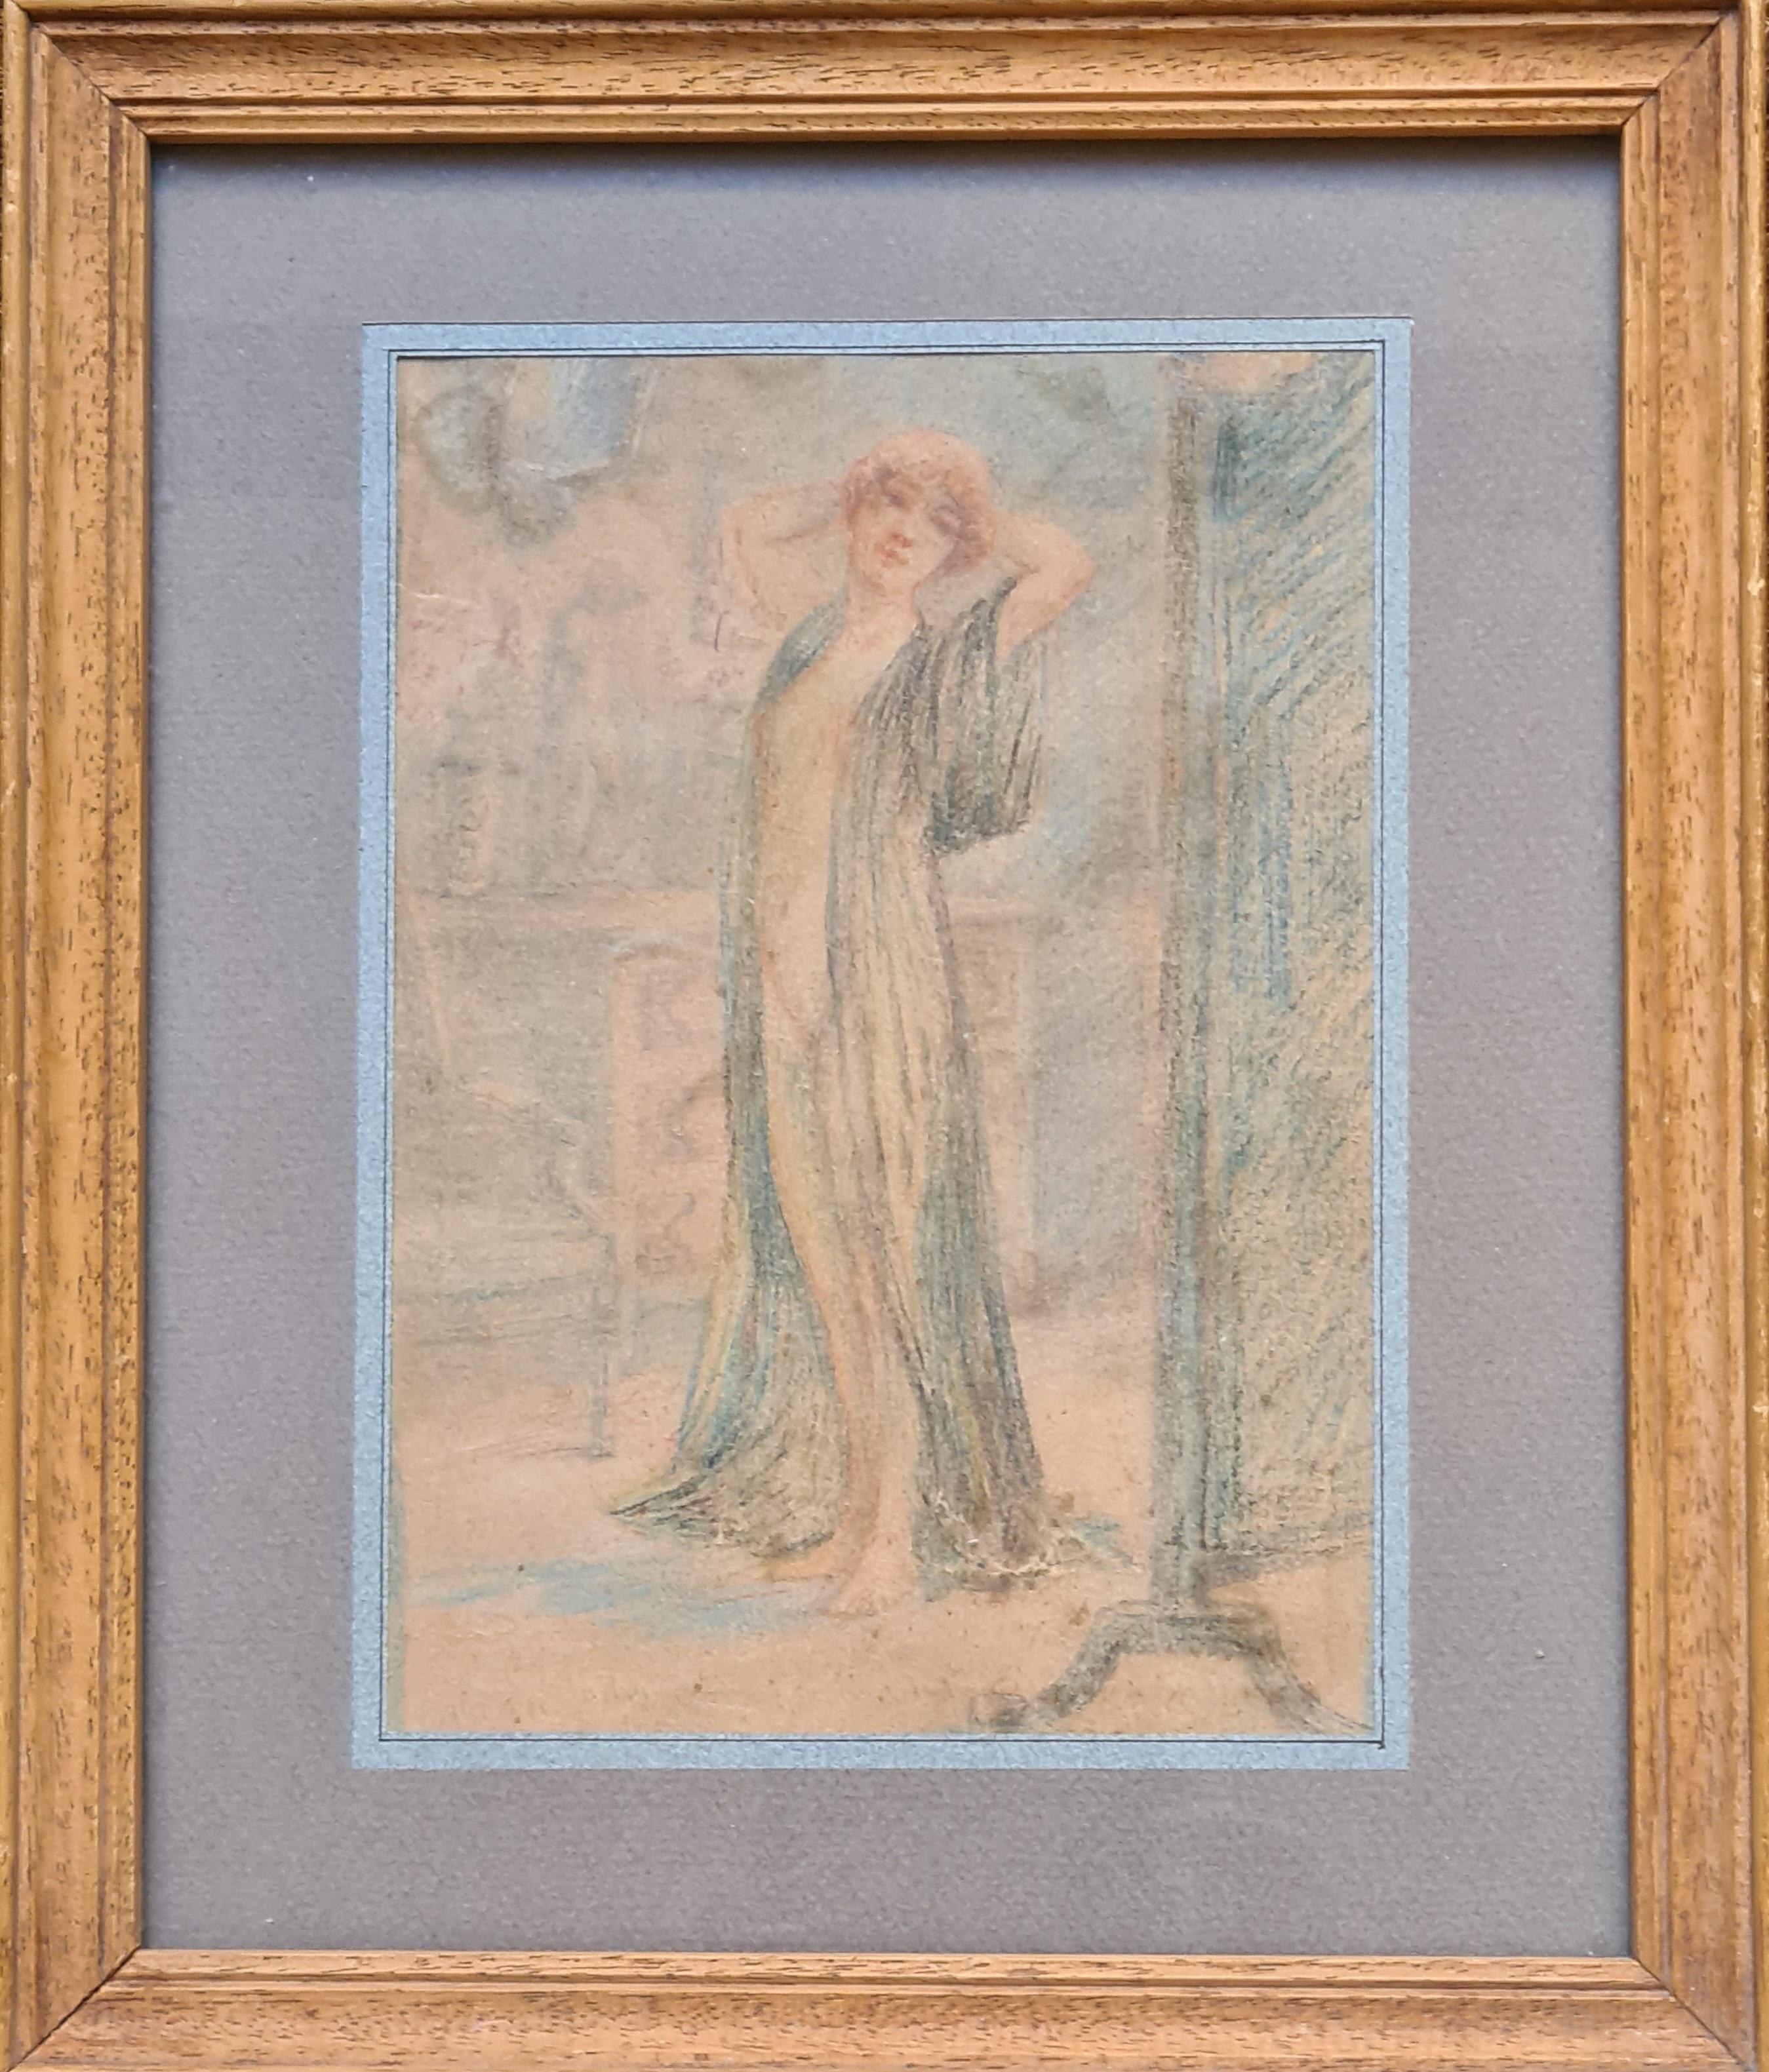 Symbolistisches Porträt einer Frau in einem Innenraum, "Vor dem Spiegel".